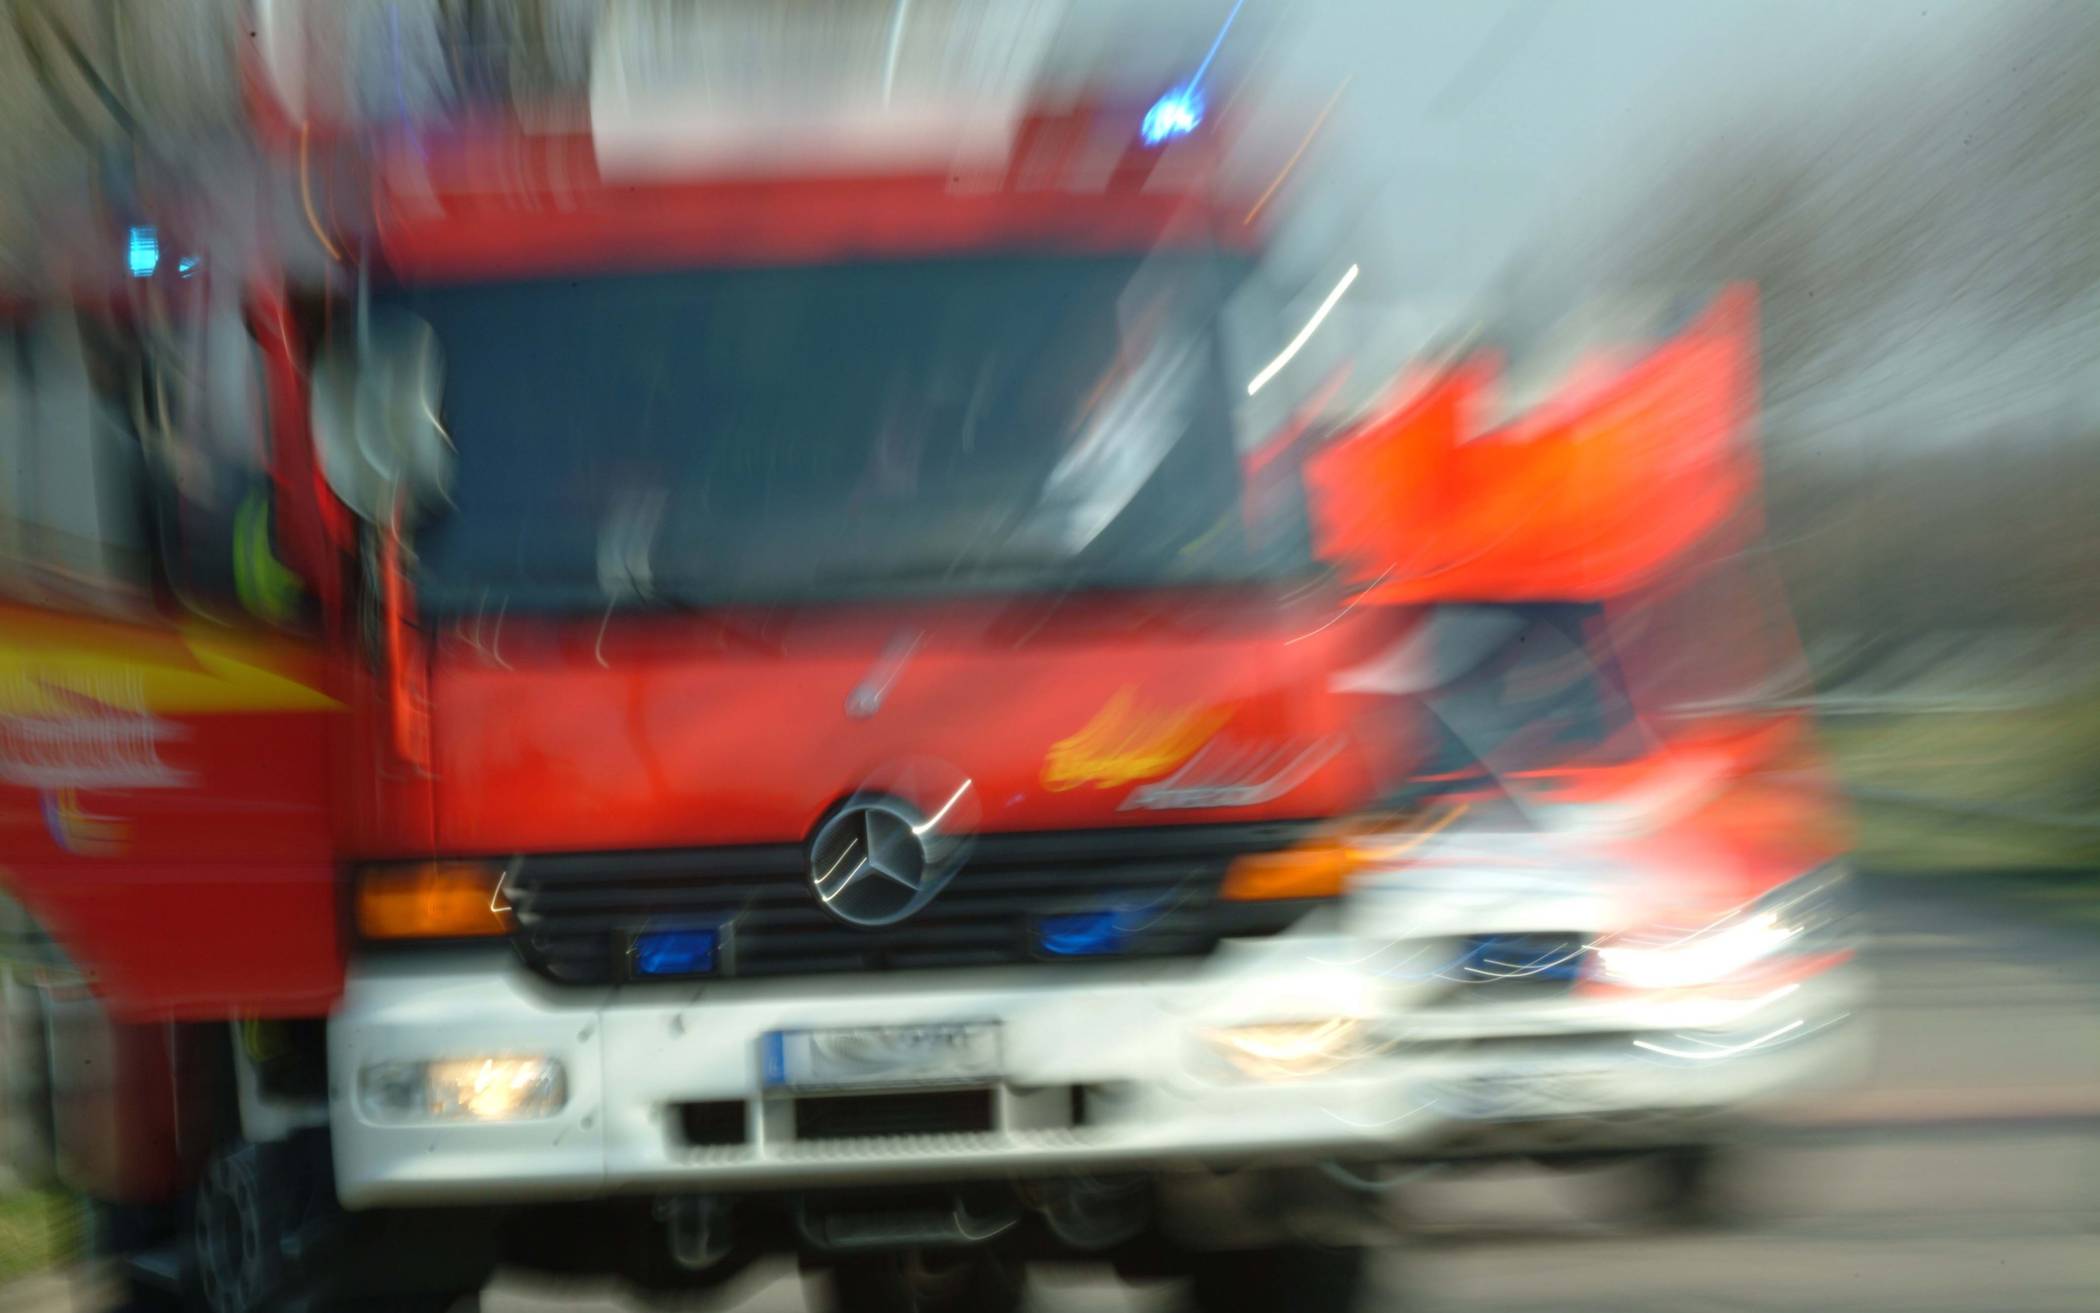 Polizei ermittelt nach Brandlegung: Feuer an der Realschule Rankestraße